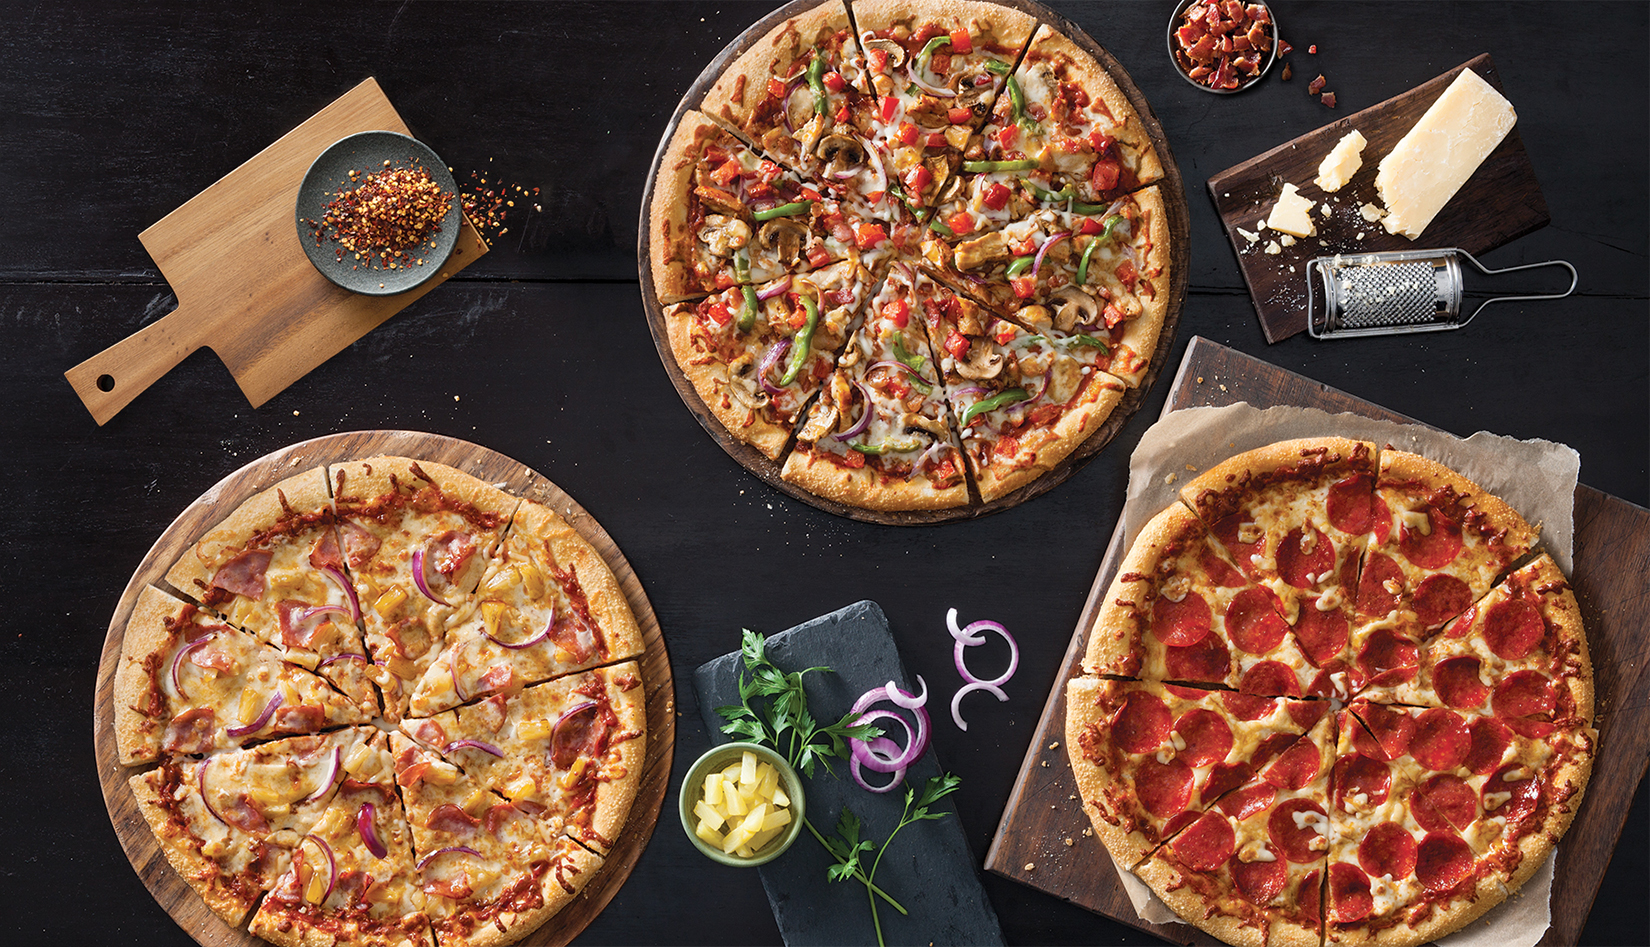 Pizza Chain News: Has Pizza Hut Revolutionized the Delivery Box